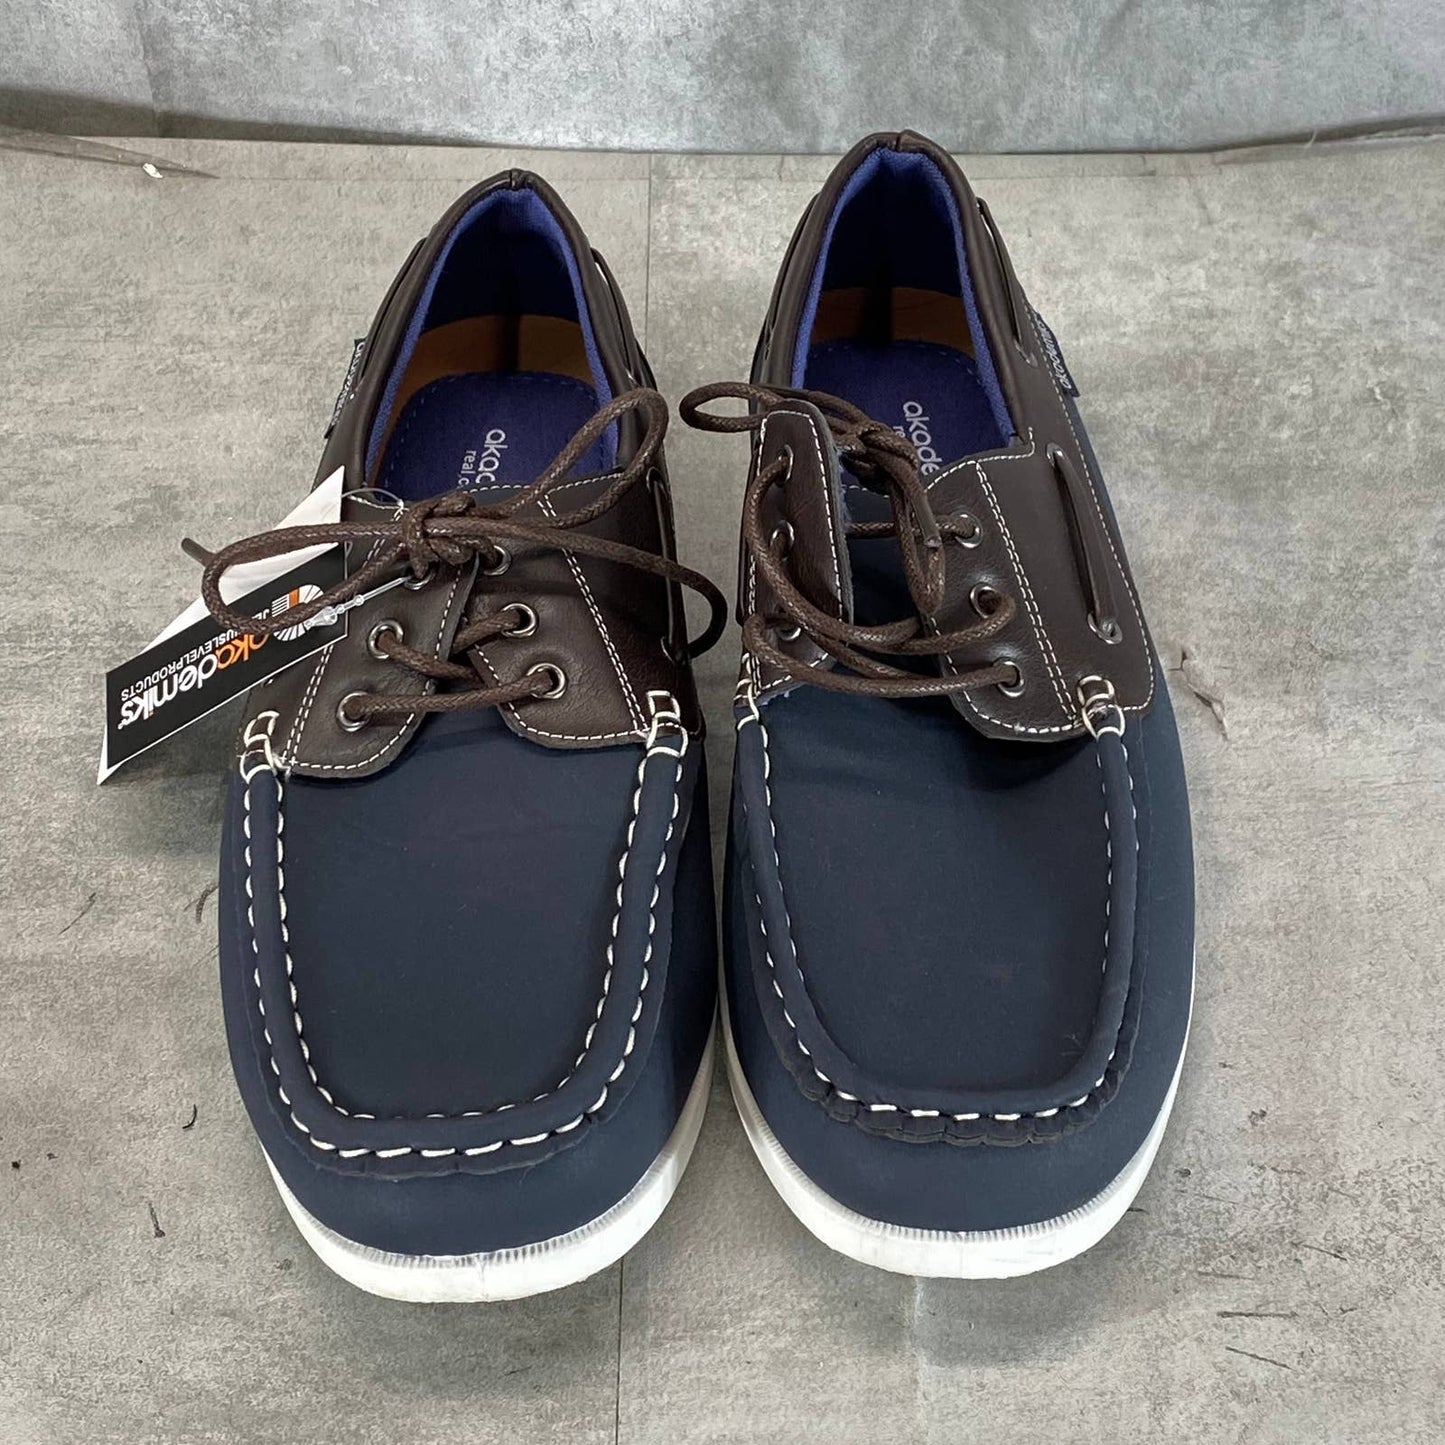 AKADEMIKS Men's Navy Marina Lace-Up Boat Shoes SZ 9